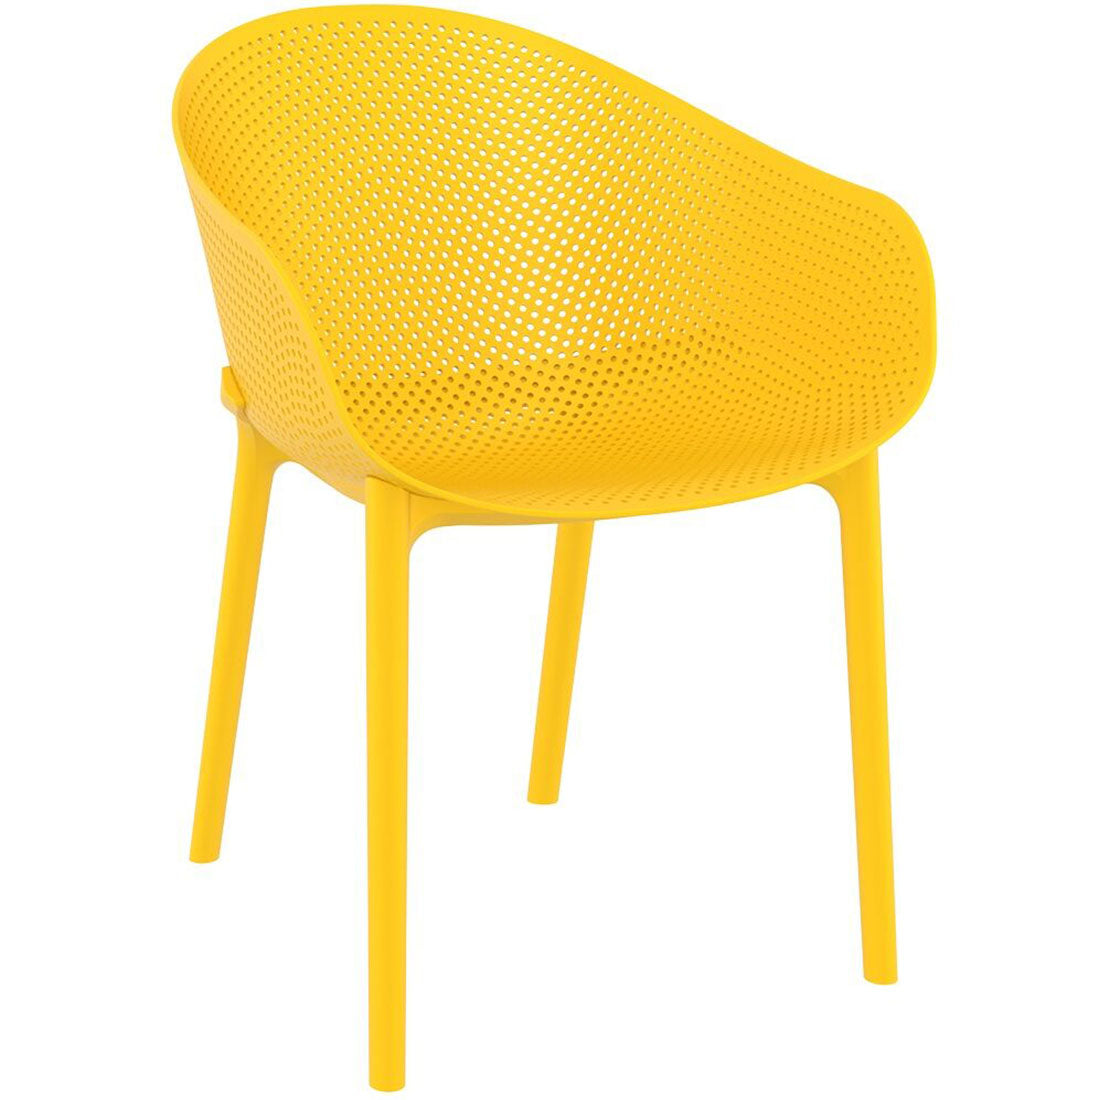 SKY Chair - switchoffice.com.au